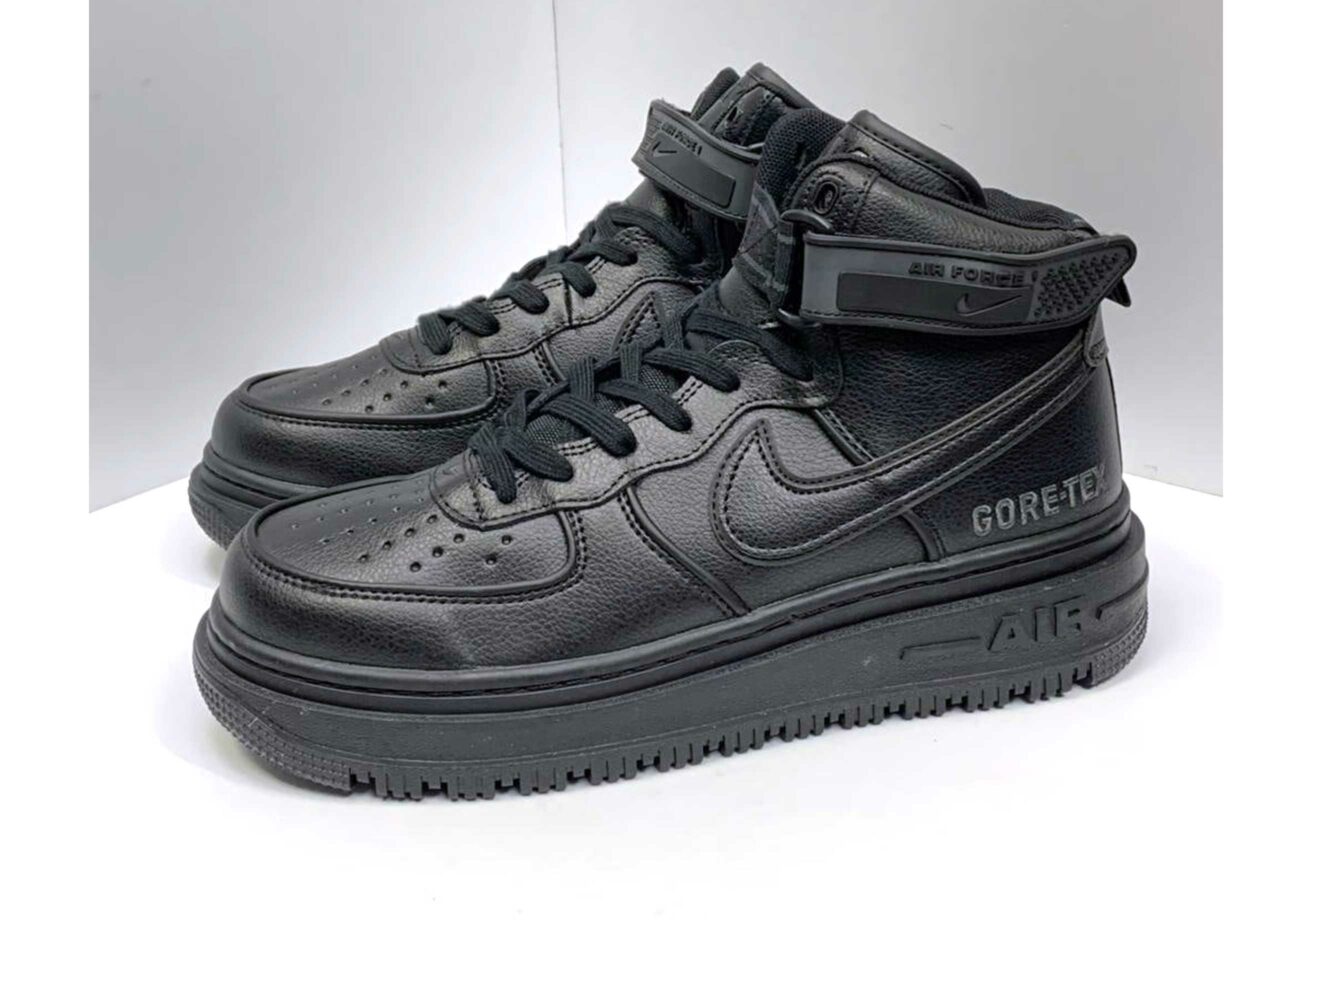 nike air force 1 gore-tex boot all black winter DA0418_001 купить